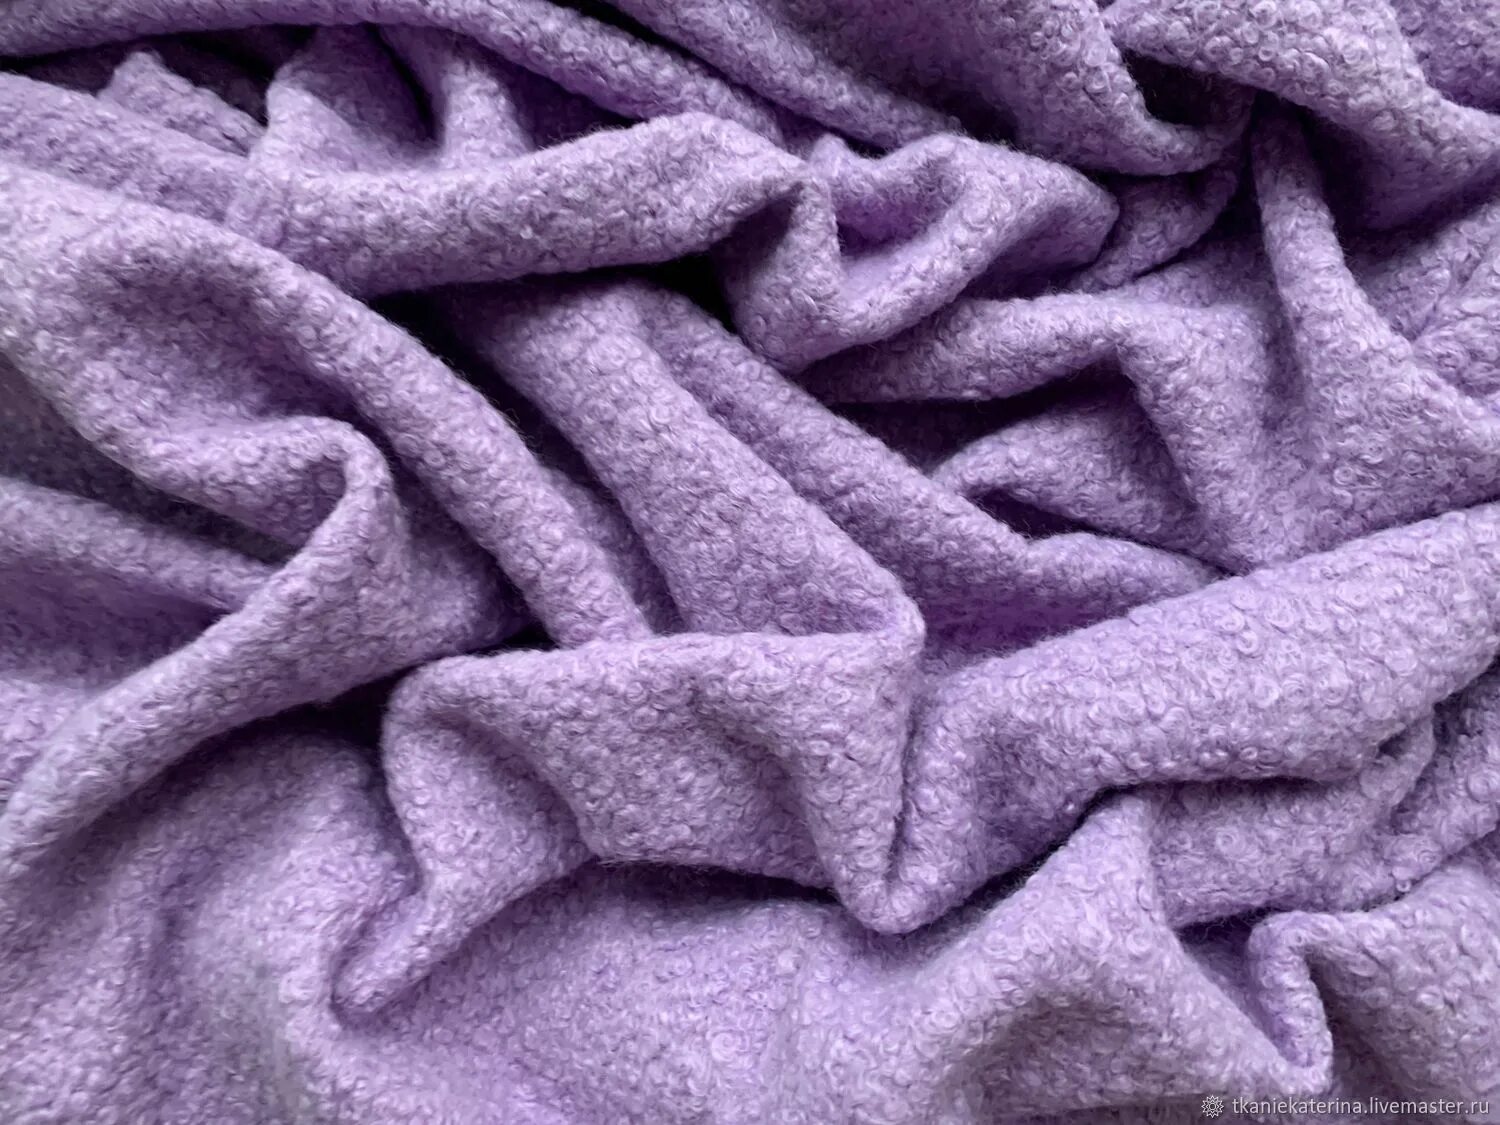 Ткань пальтовая эко мех каракуль. Пальтовая ткань фиолетовая. Мех ткань. Пальтовая ткань каракуль.